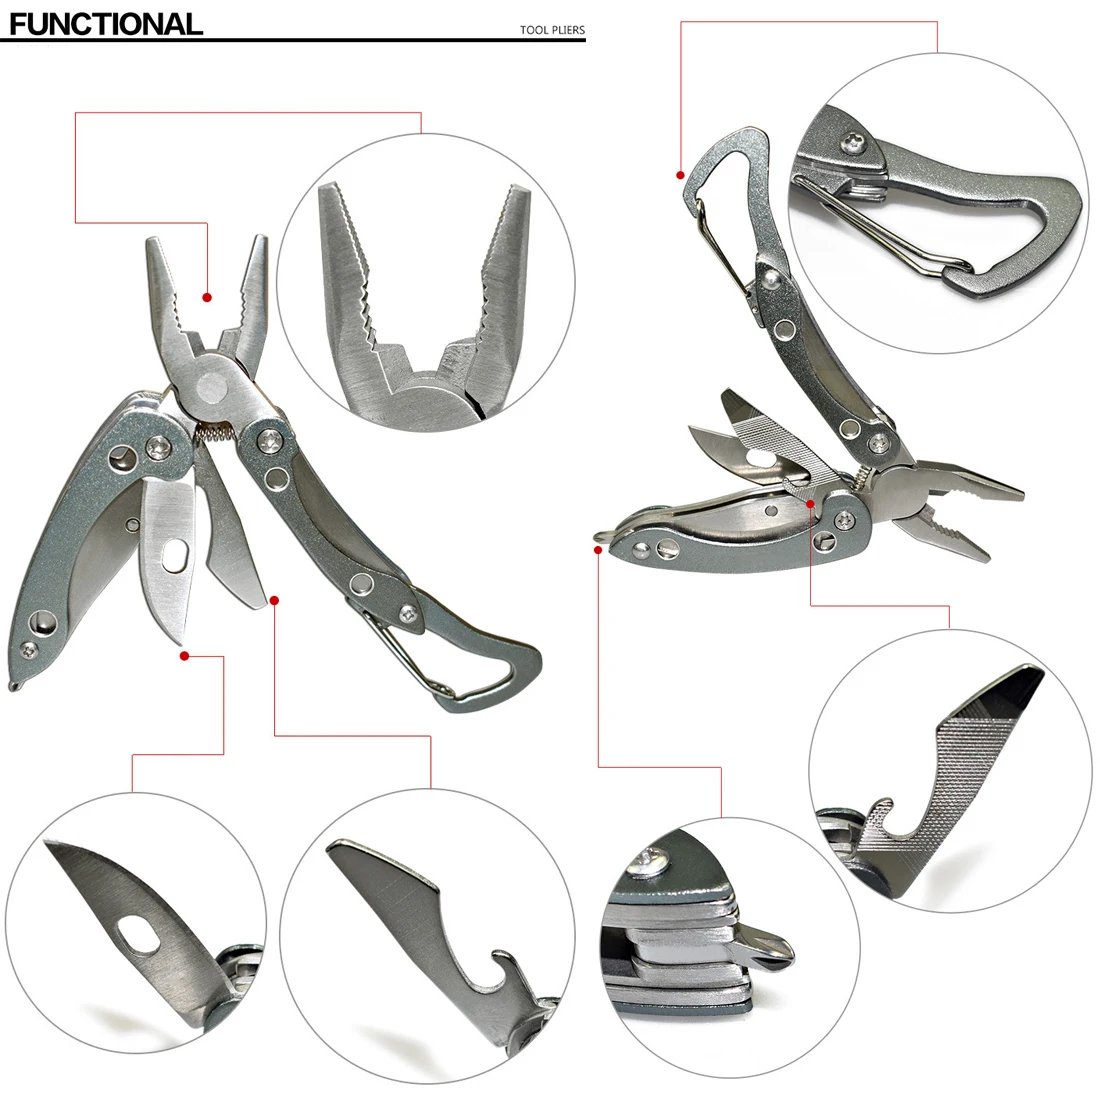 6 в 1 многофункциональные инструменты, складные плоскогубцы для кемпинга, рыбалки, многофункциональные инструменты, плоскогубцы, отвертка, биты, многофункциональный инструмент, нож для выживания